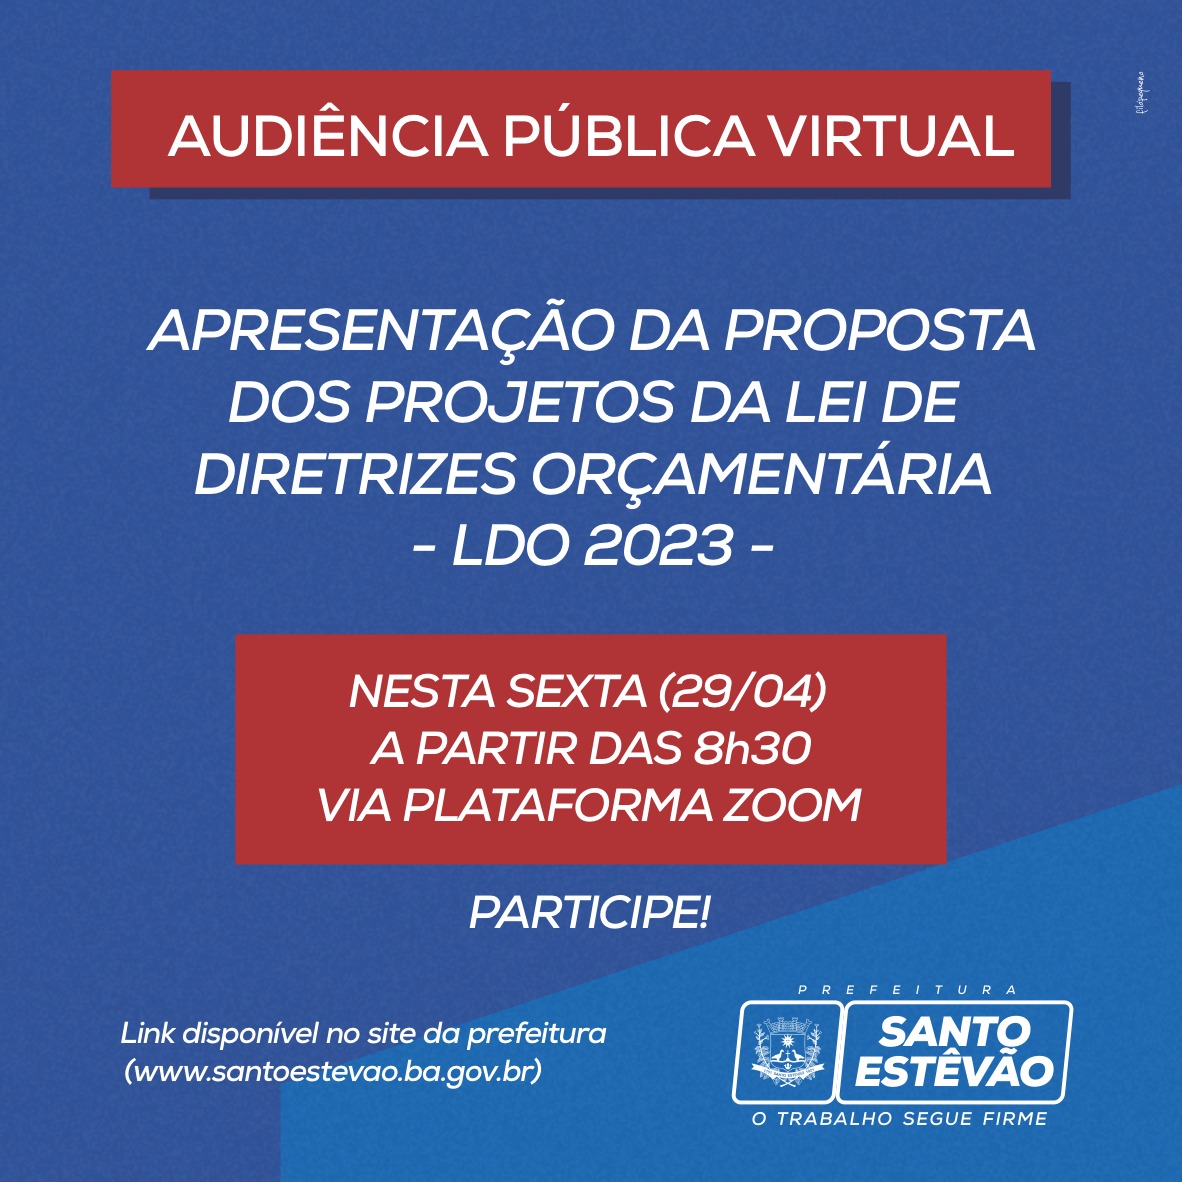 Confira o link e participe da Audiência Pública Virtual Lei de Diretrizes Orçamentárias – LDO 2023 